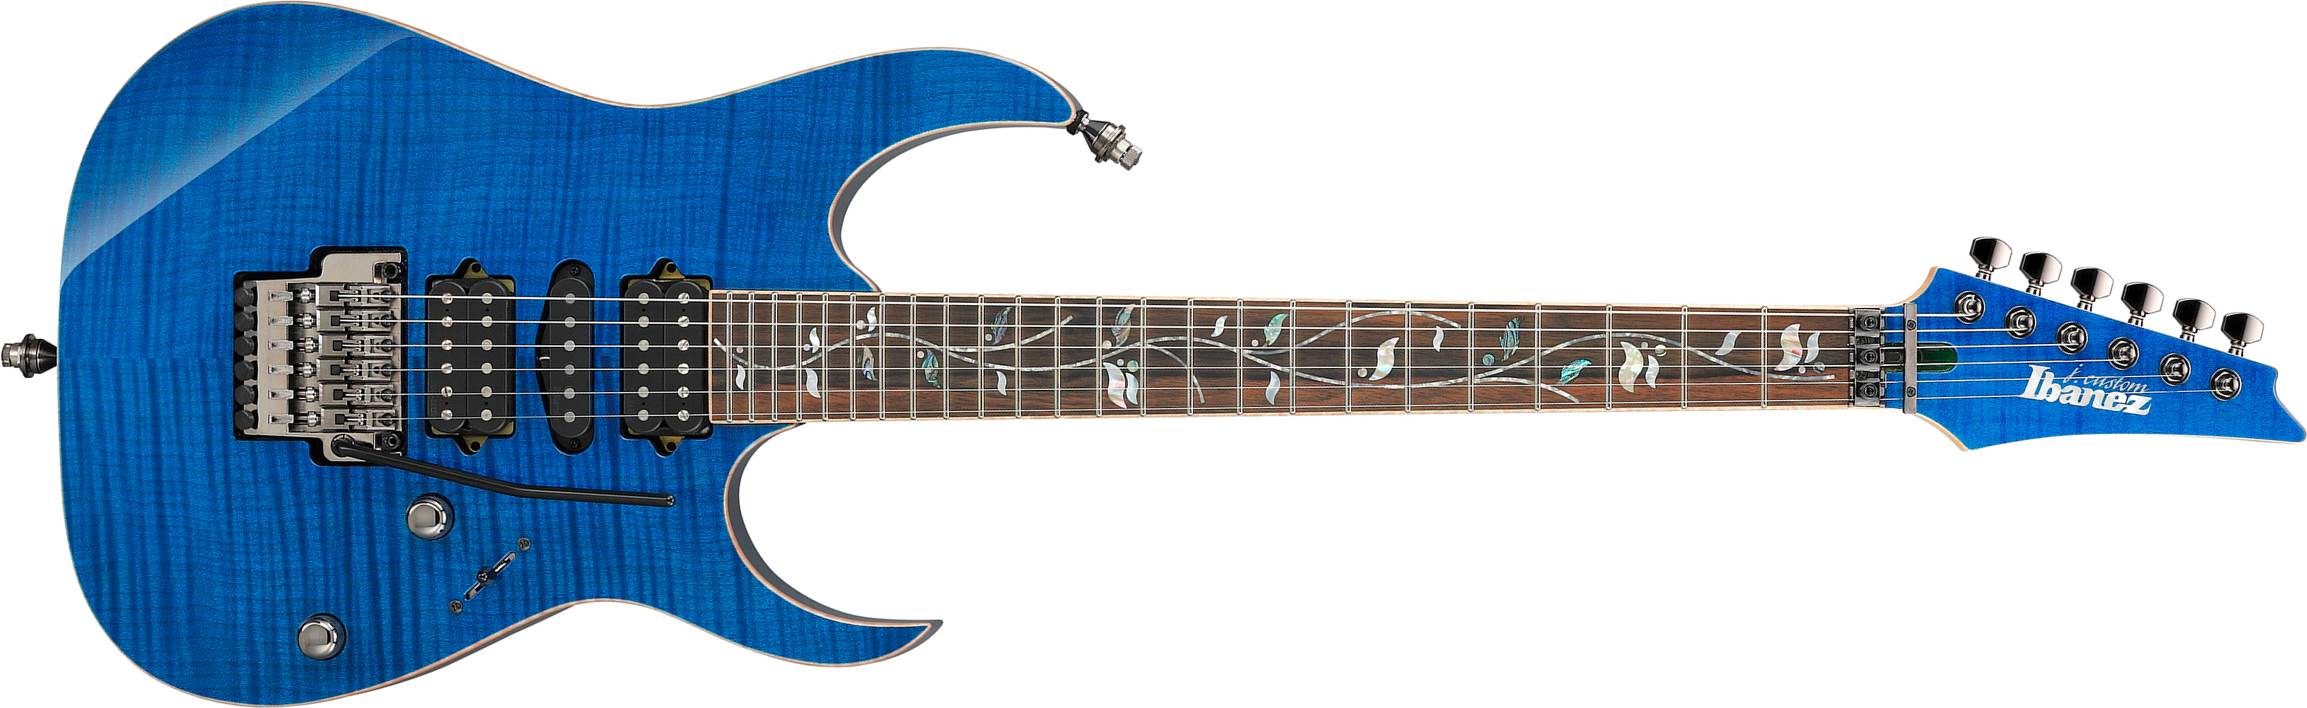 Ibanez Rg8570 Bre J.custom Jap Hsh Dimarzio Fr Eb - Royal Blue Sapphire - Str shape electric guitar - Main picture